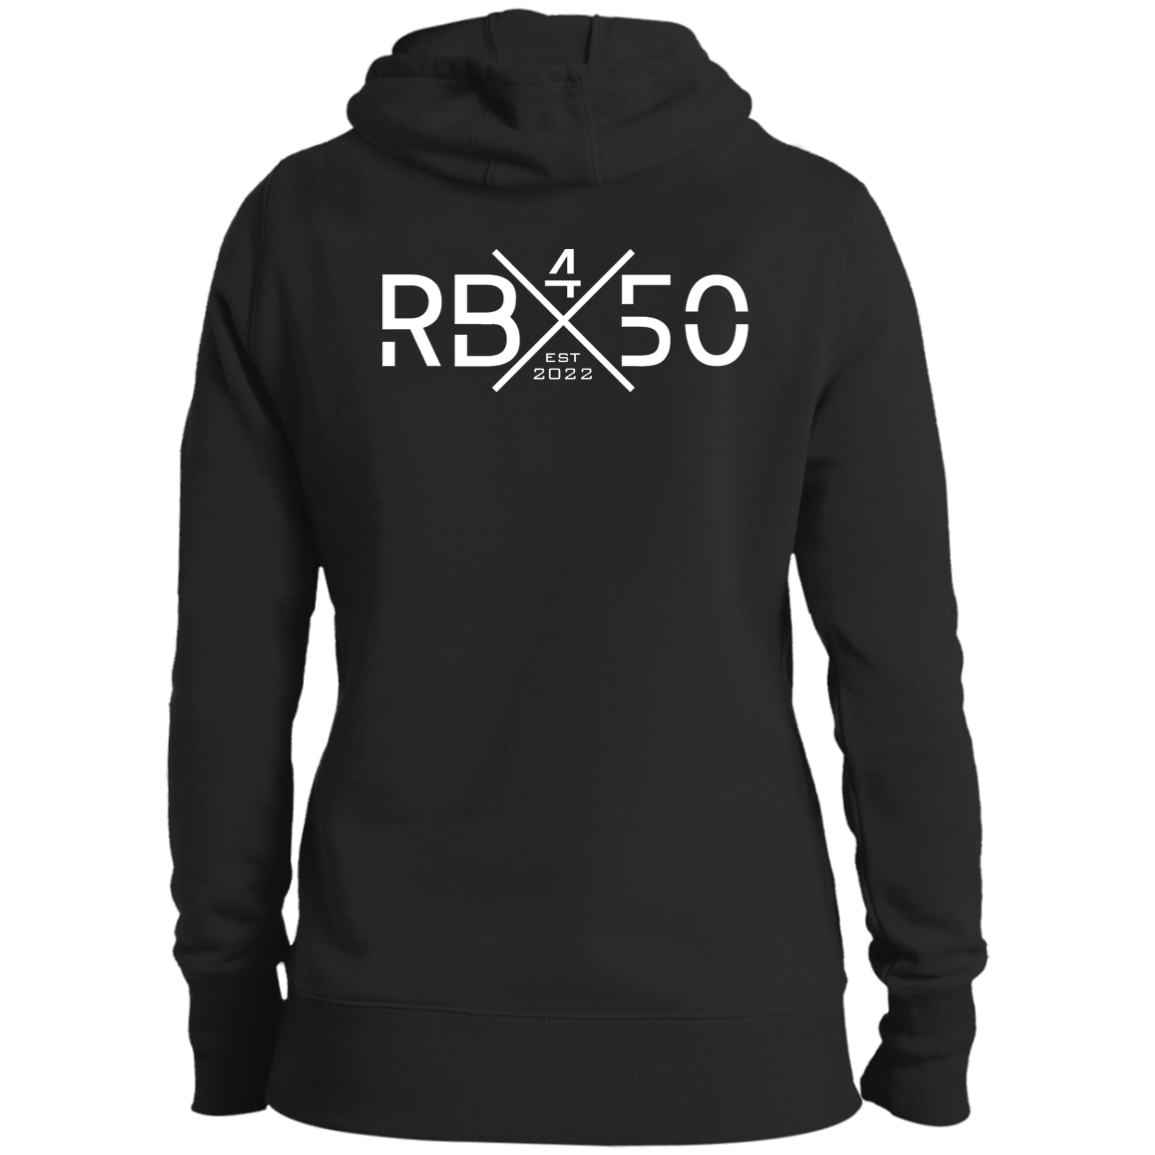 RB450 REAP Ladies' Pullover Hooded Sweatshirt